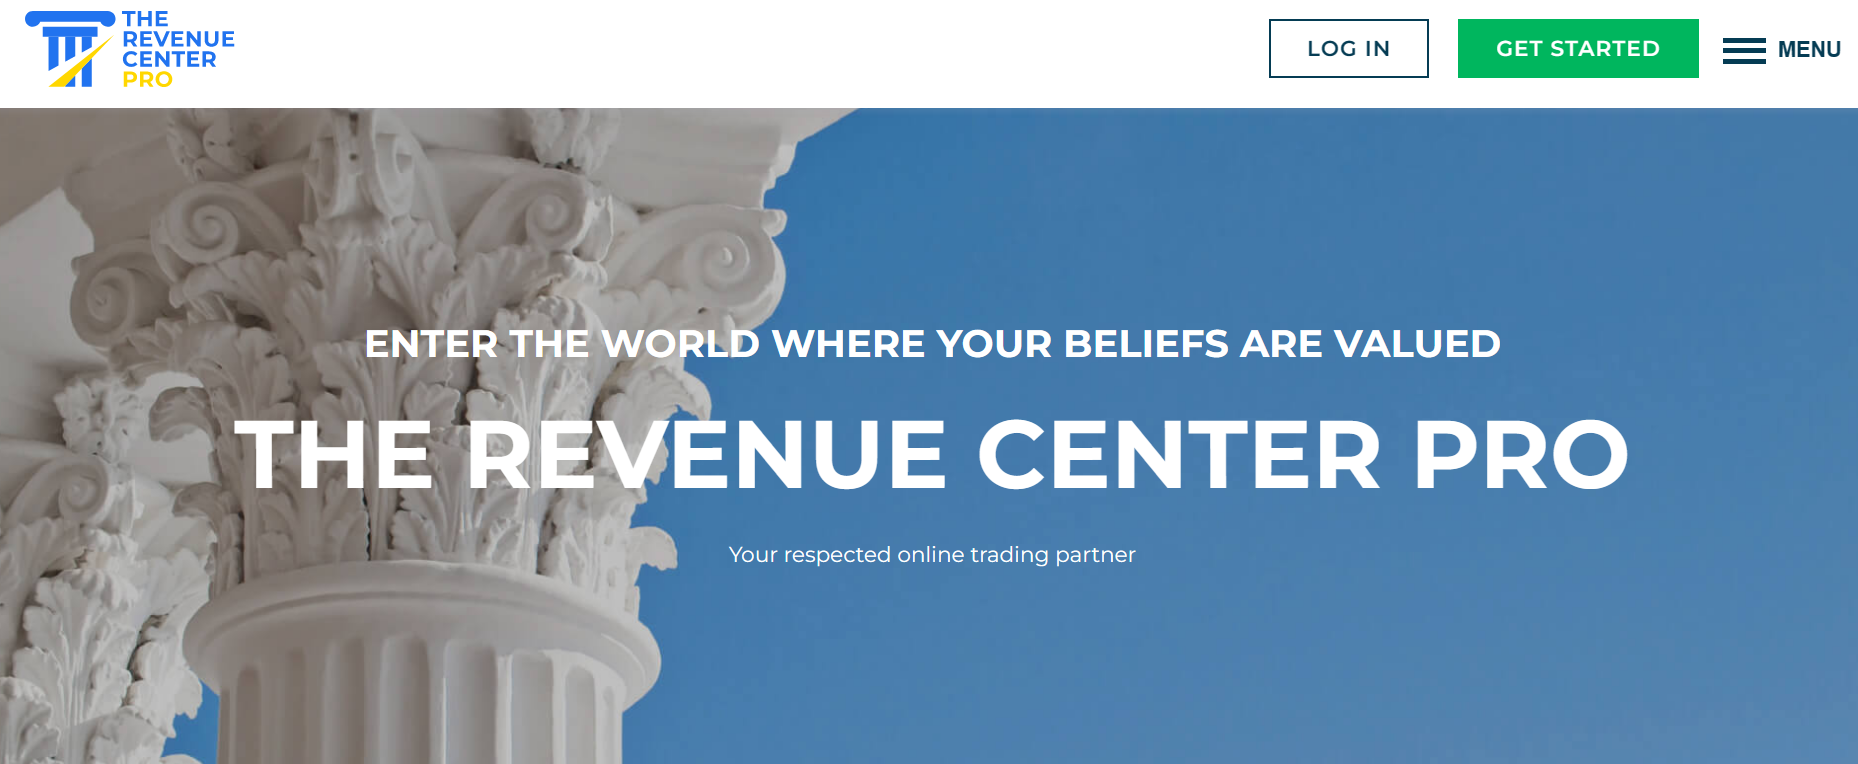 The Revenue Center pro-homepage